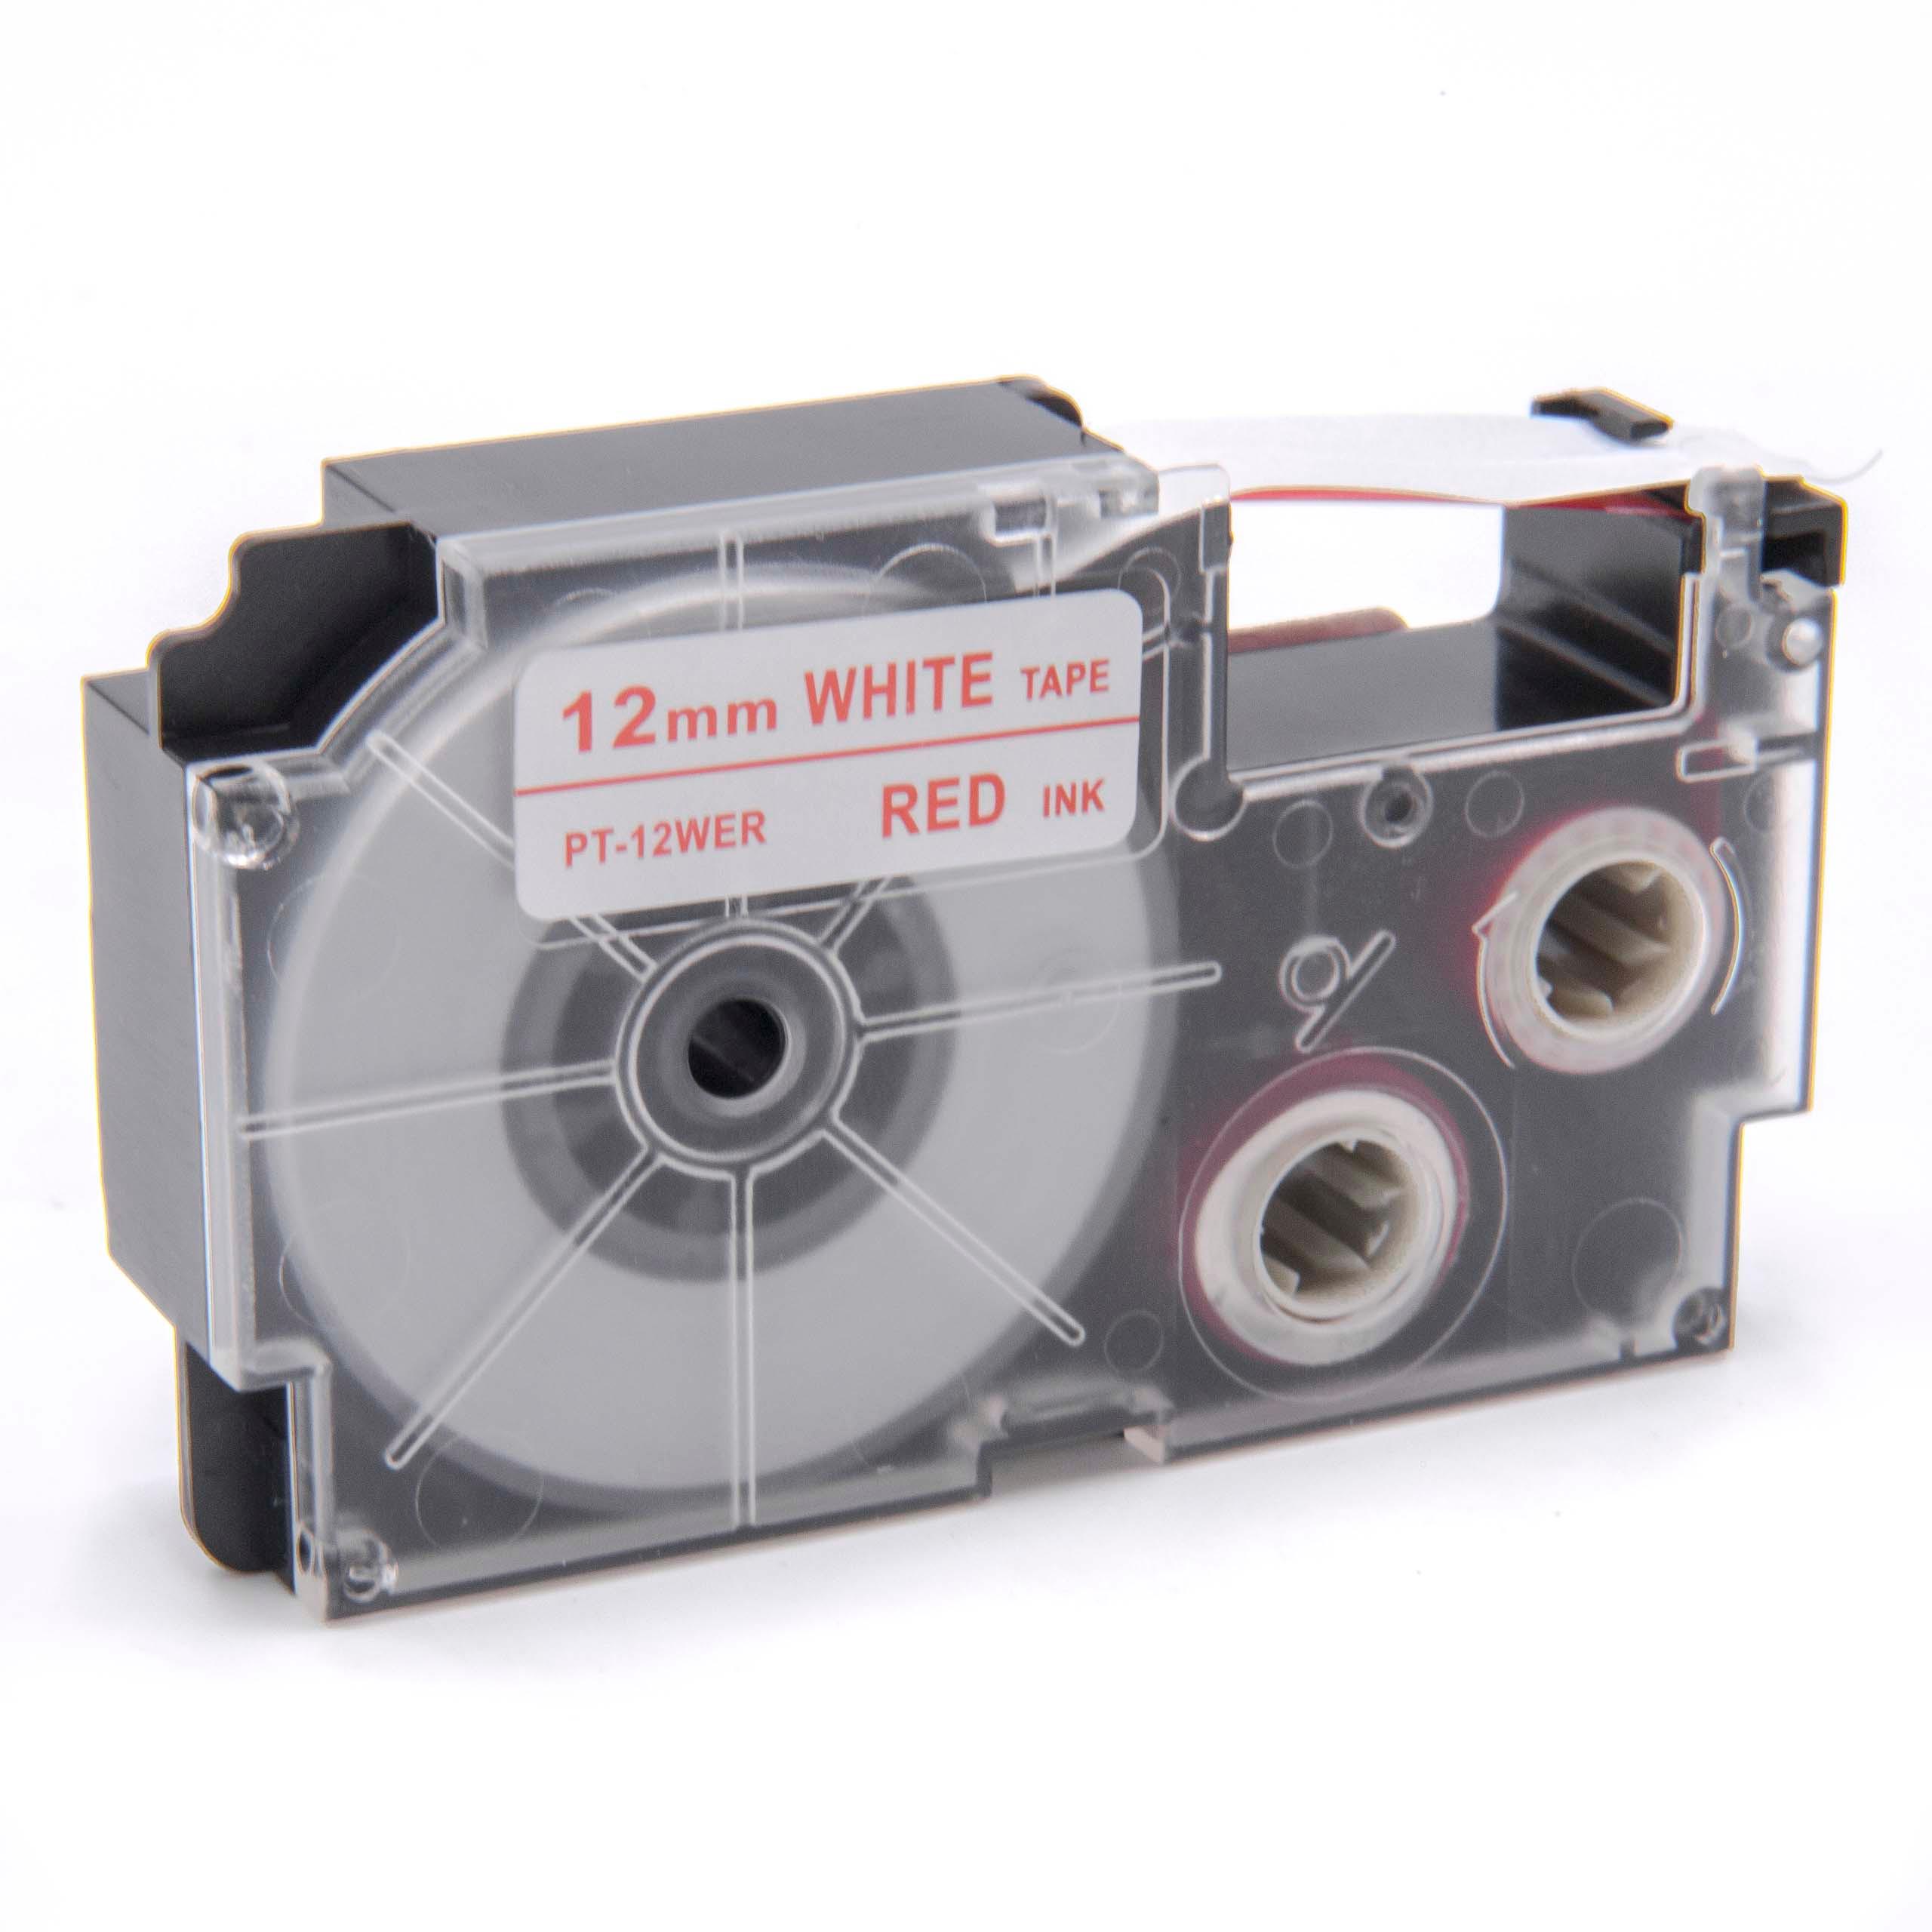 Cassetta nastro sostituisce Casio XR-12WER1, XR-12WER per etichettatrice Casio 12mm rosso su bianco